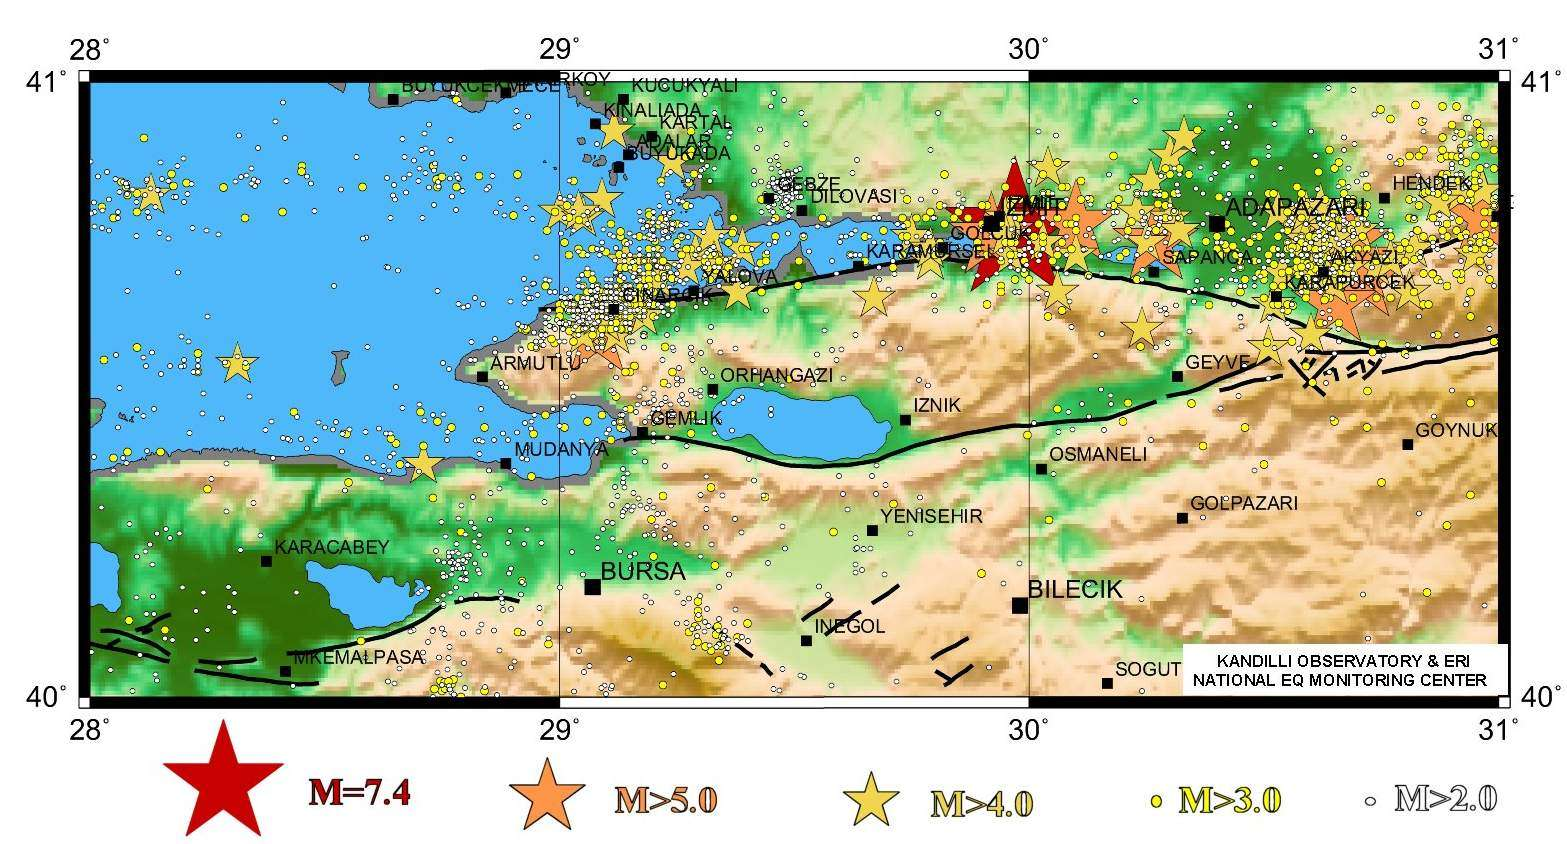 Gürkan ve diğerleri Şekil 2: Mikro-jeodezik ağlar İznik Mikrojeodezik Ağı: Bölgenin en az sismik aktivitesine sahip İznik-Mekece Fay Segmentinde 10 noktalı olarak 1990-1991 yıllarında kurulmuştur.